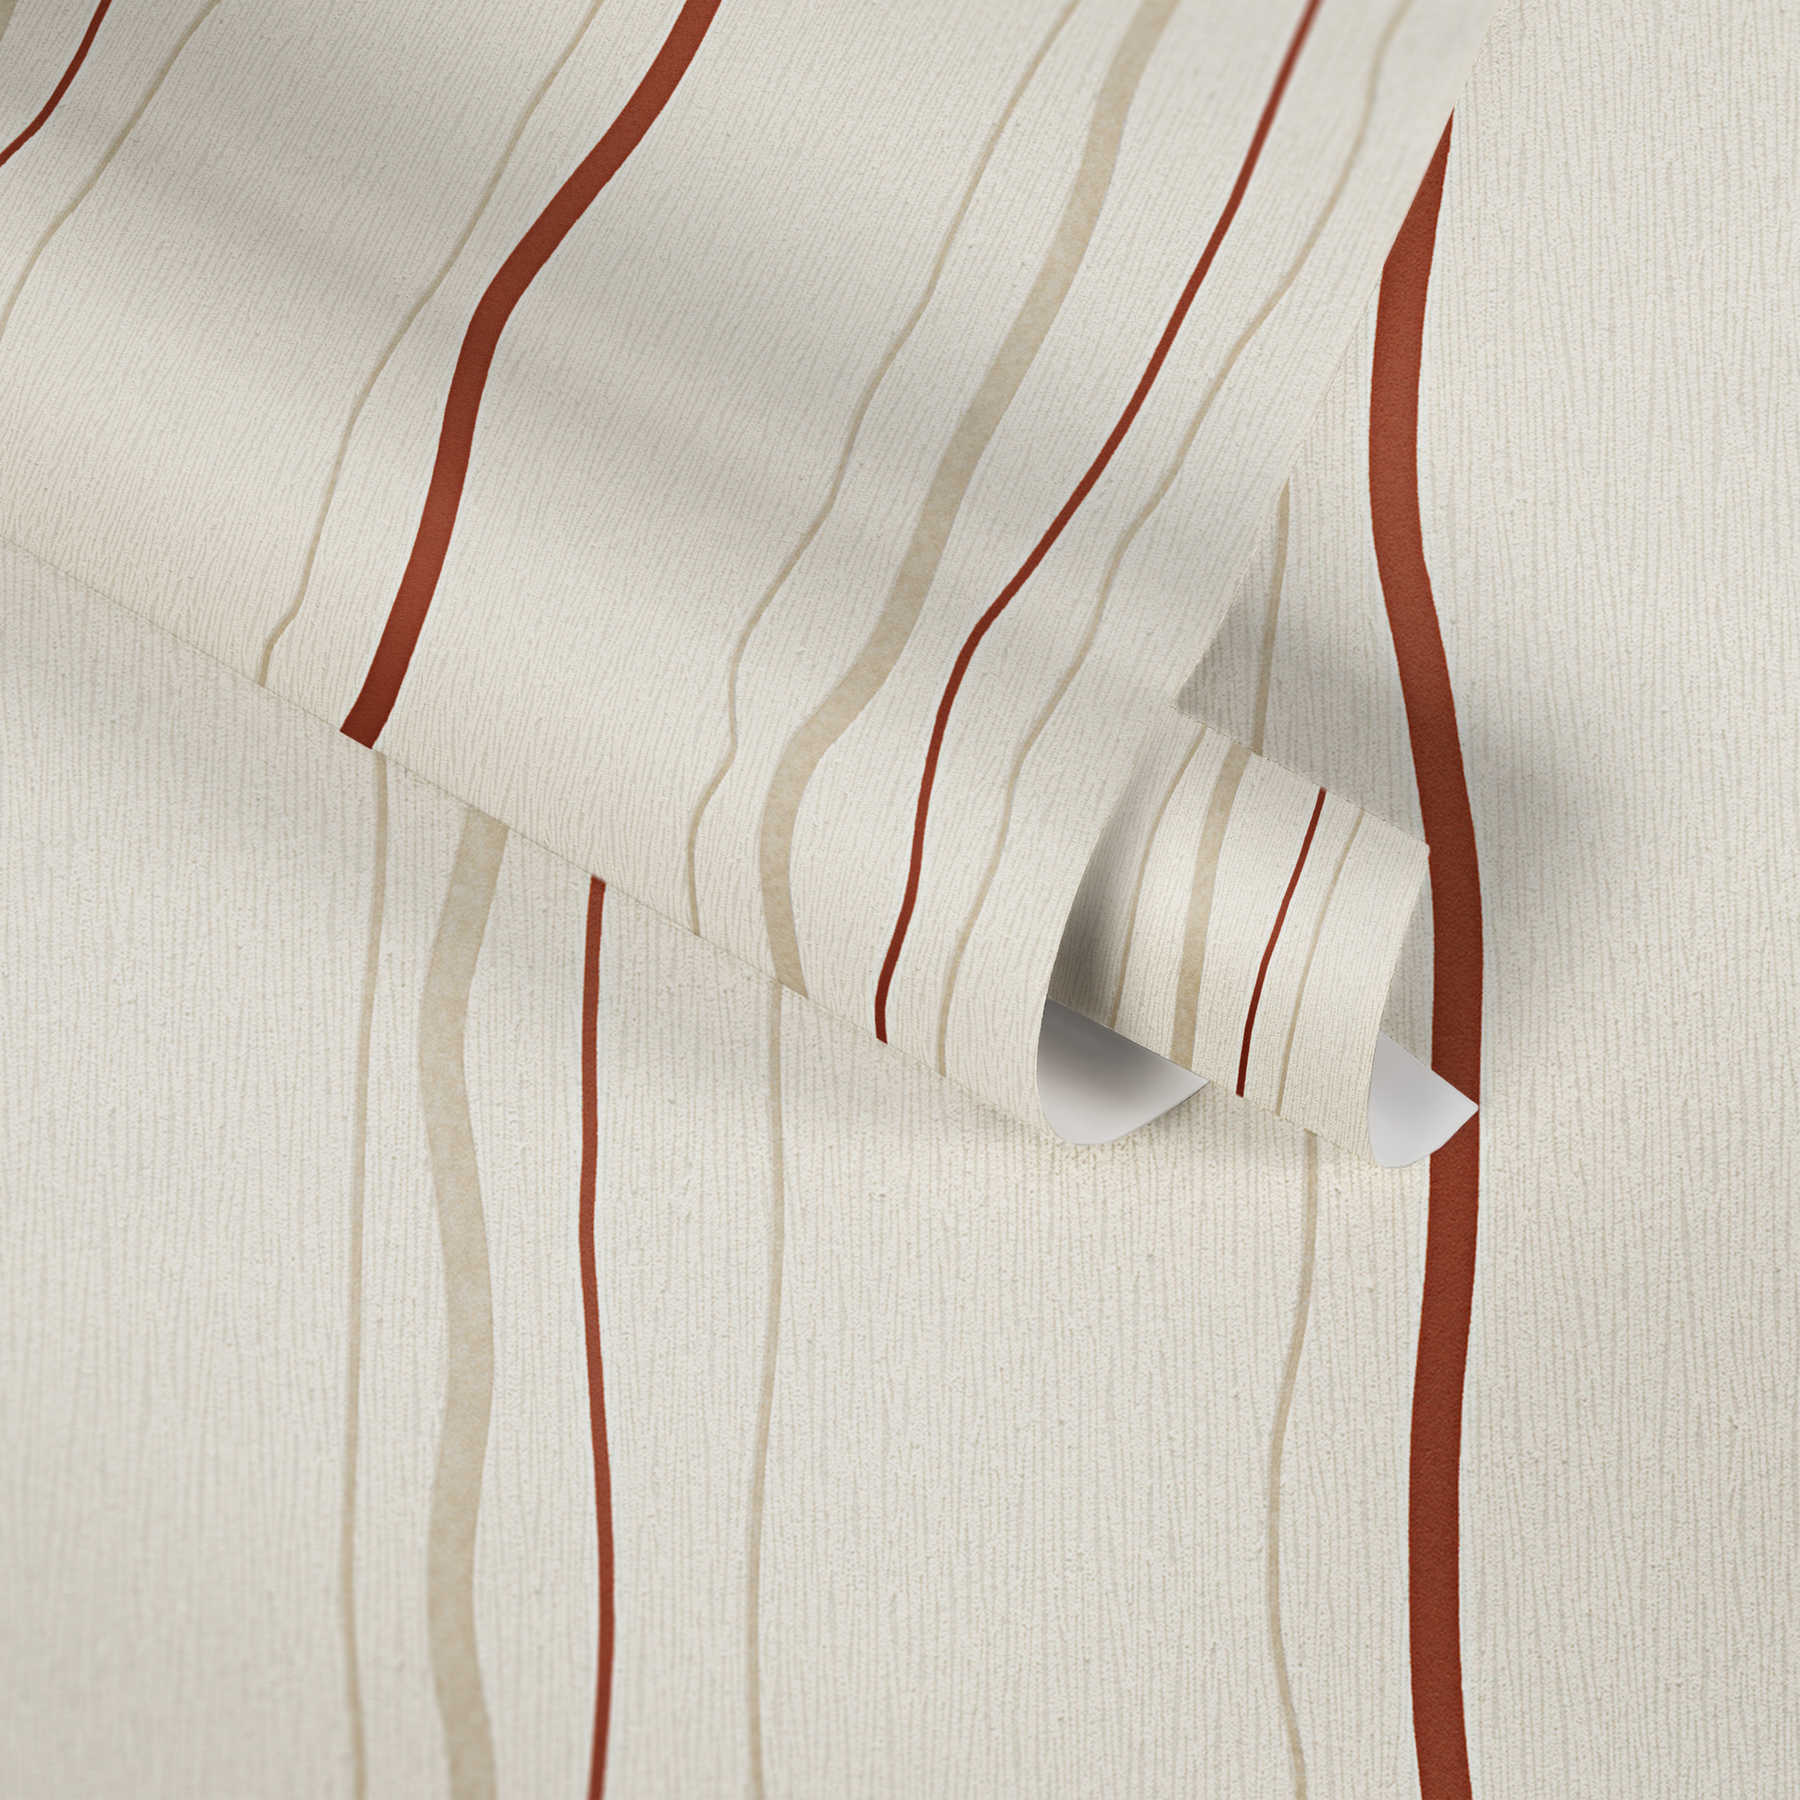             Papier peint à rayures verticales - crème, rouge, beige
        